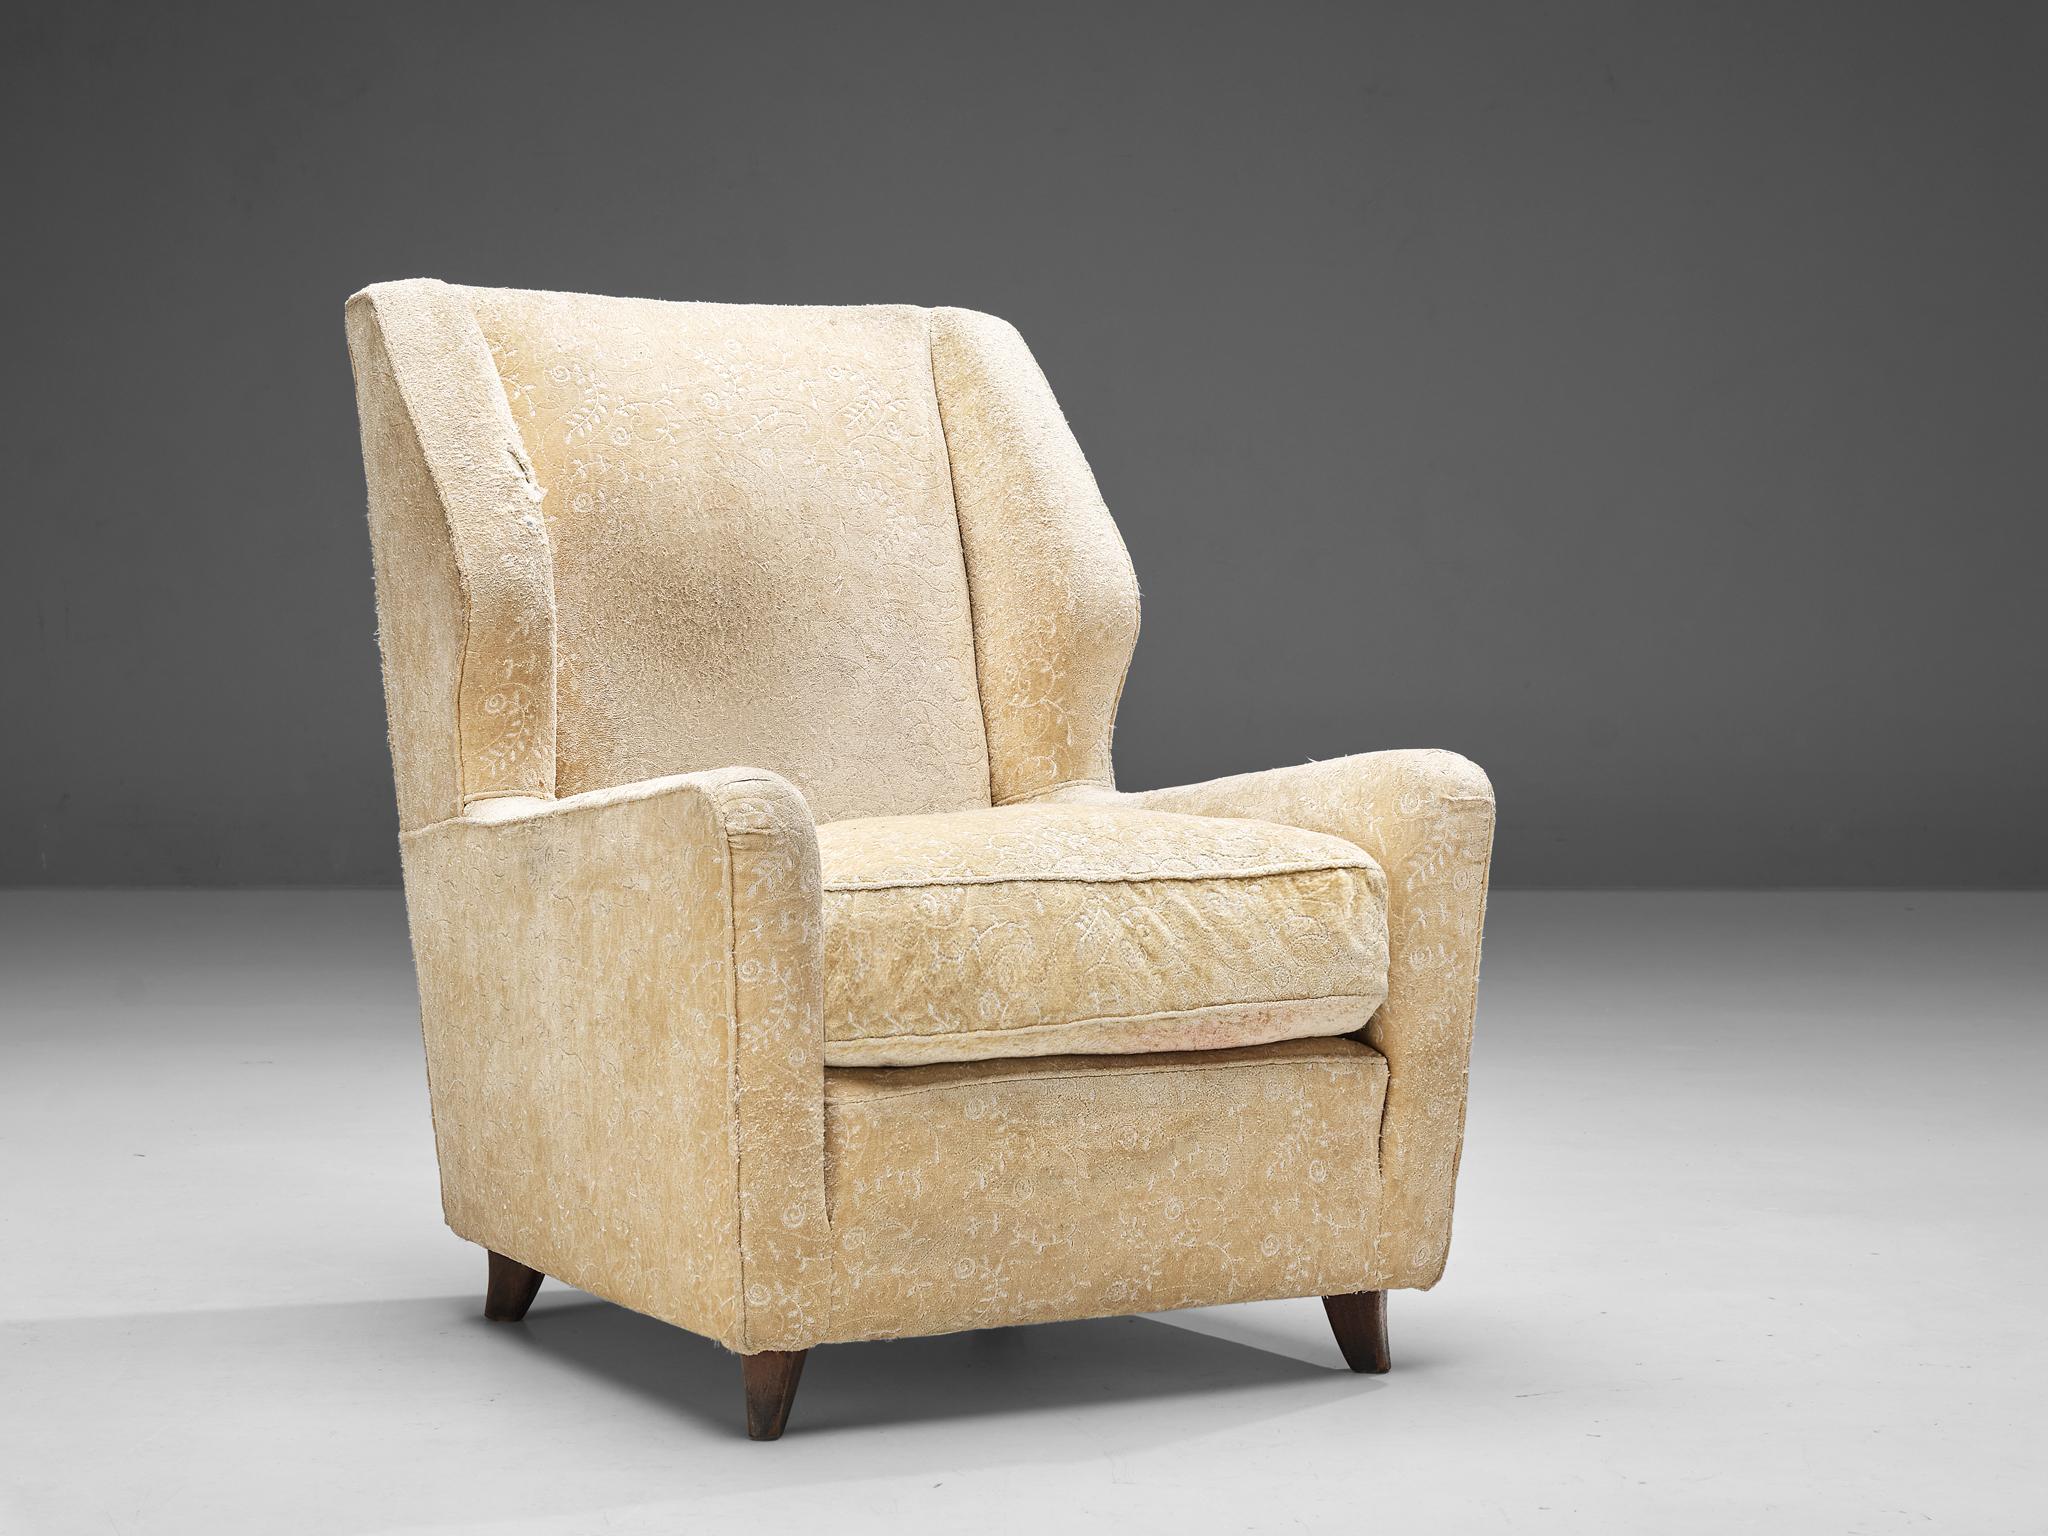 Chaise longue, bois, tissu, Danemark, années 1950

Fauteuil danois volumineux avec tapisserie florale. La chaise a des accoudoirs bas et un dossier avec deux ailes qui encadrent le siège. En regardant de côté, le design présente un contour